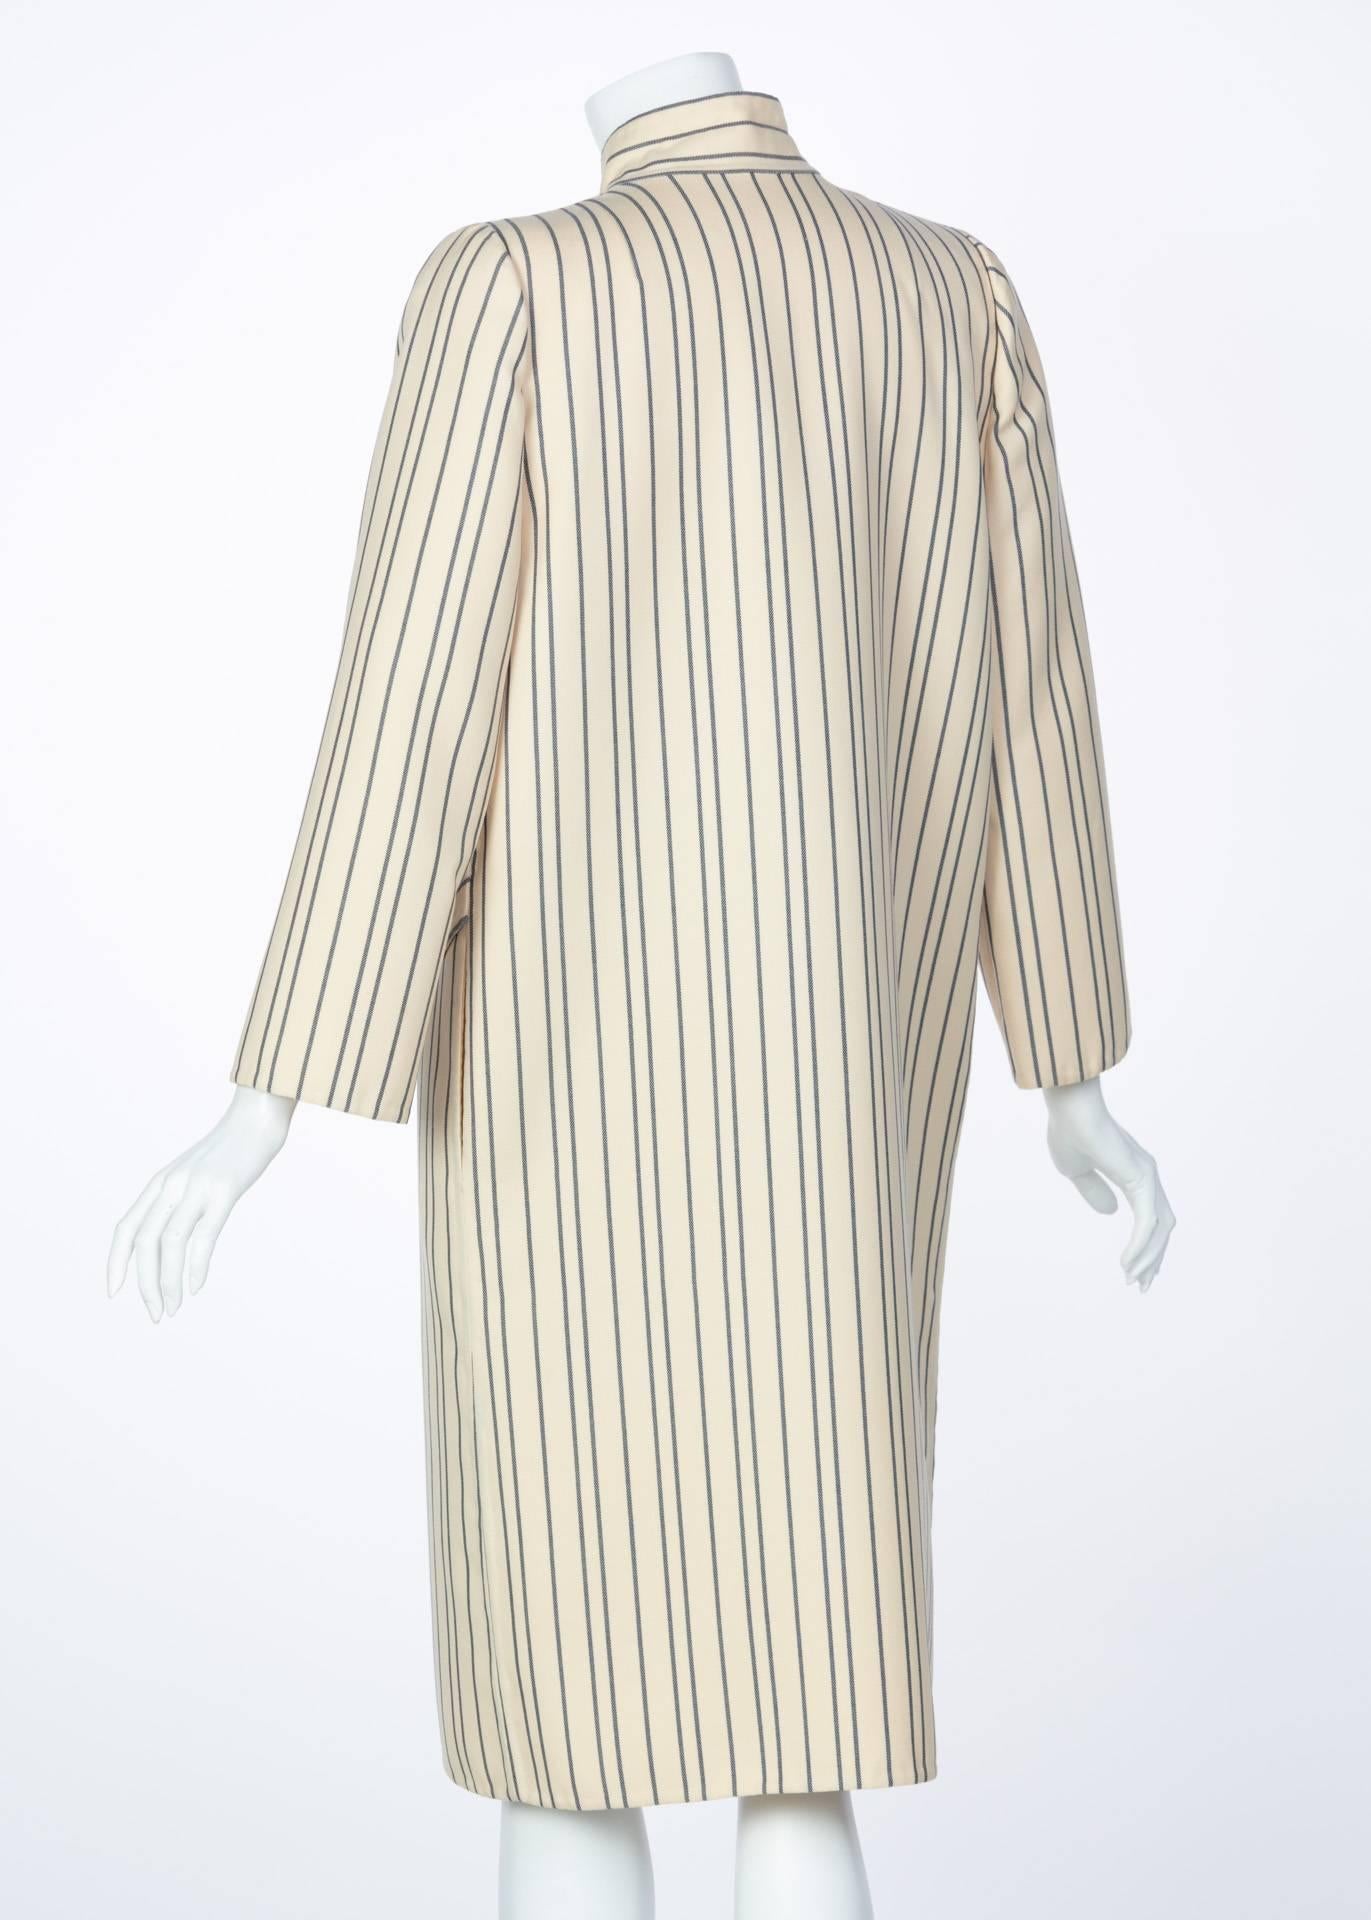 Pauline Trigère - Combinaison jupe manteau en sergé de laine rayé crème et bleu marine, des années 1990 Pour femmes en vente